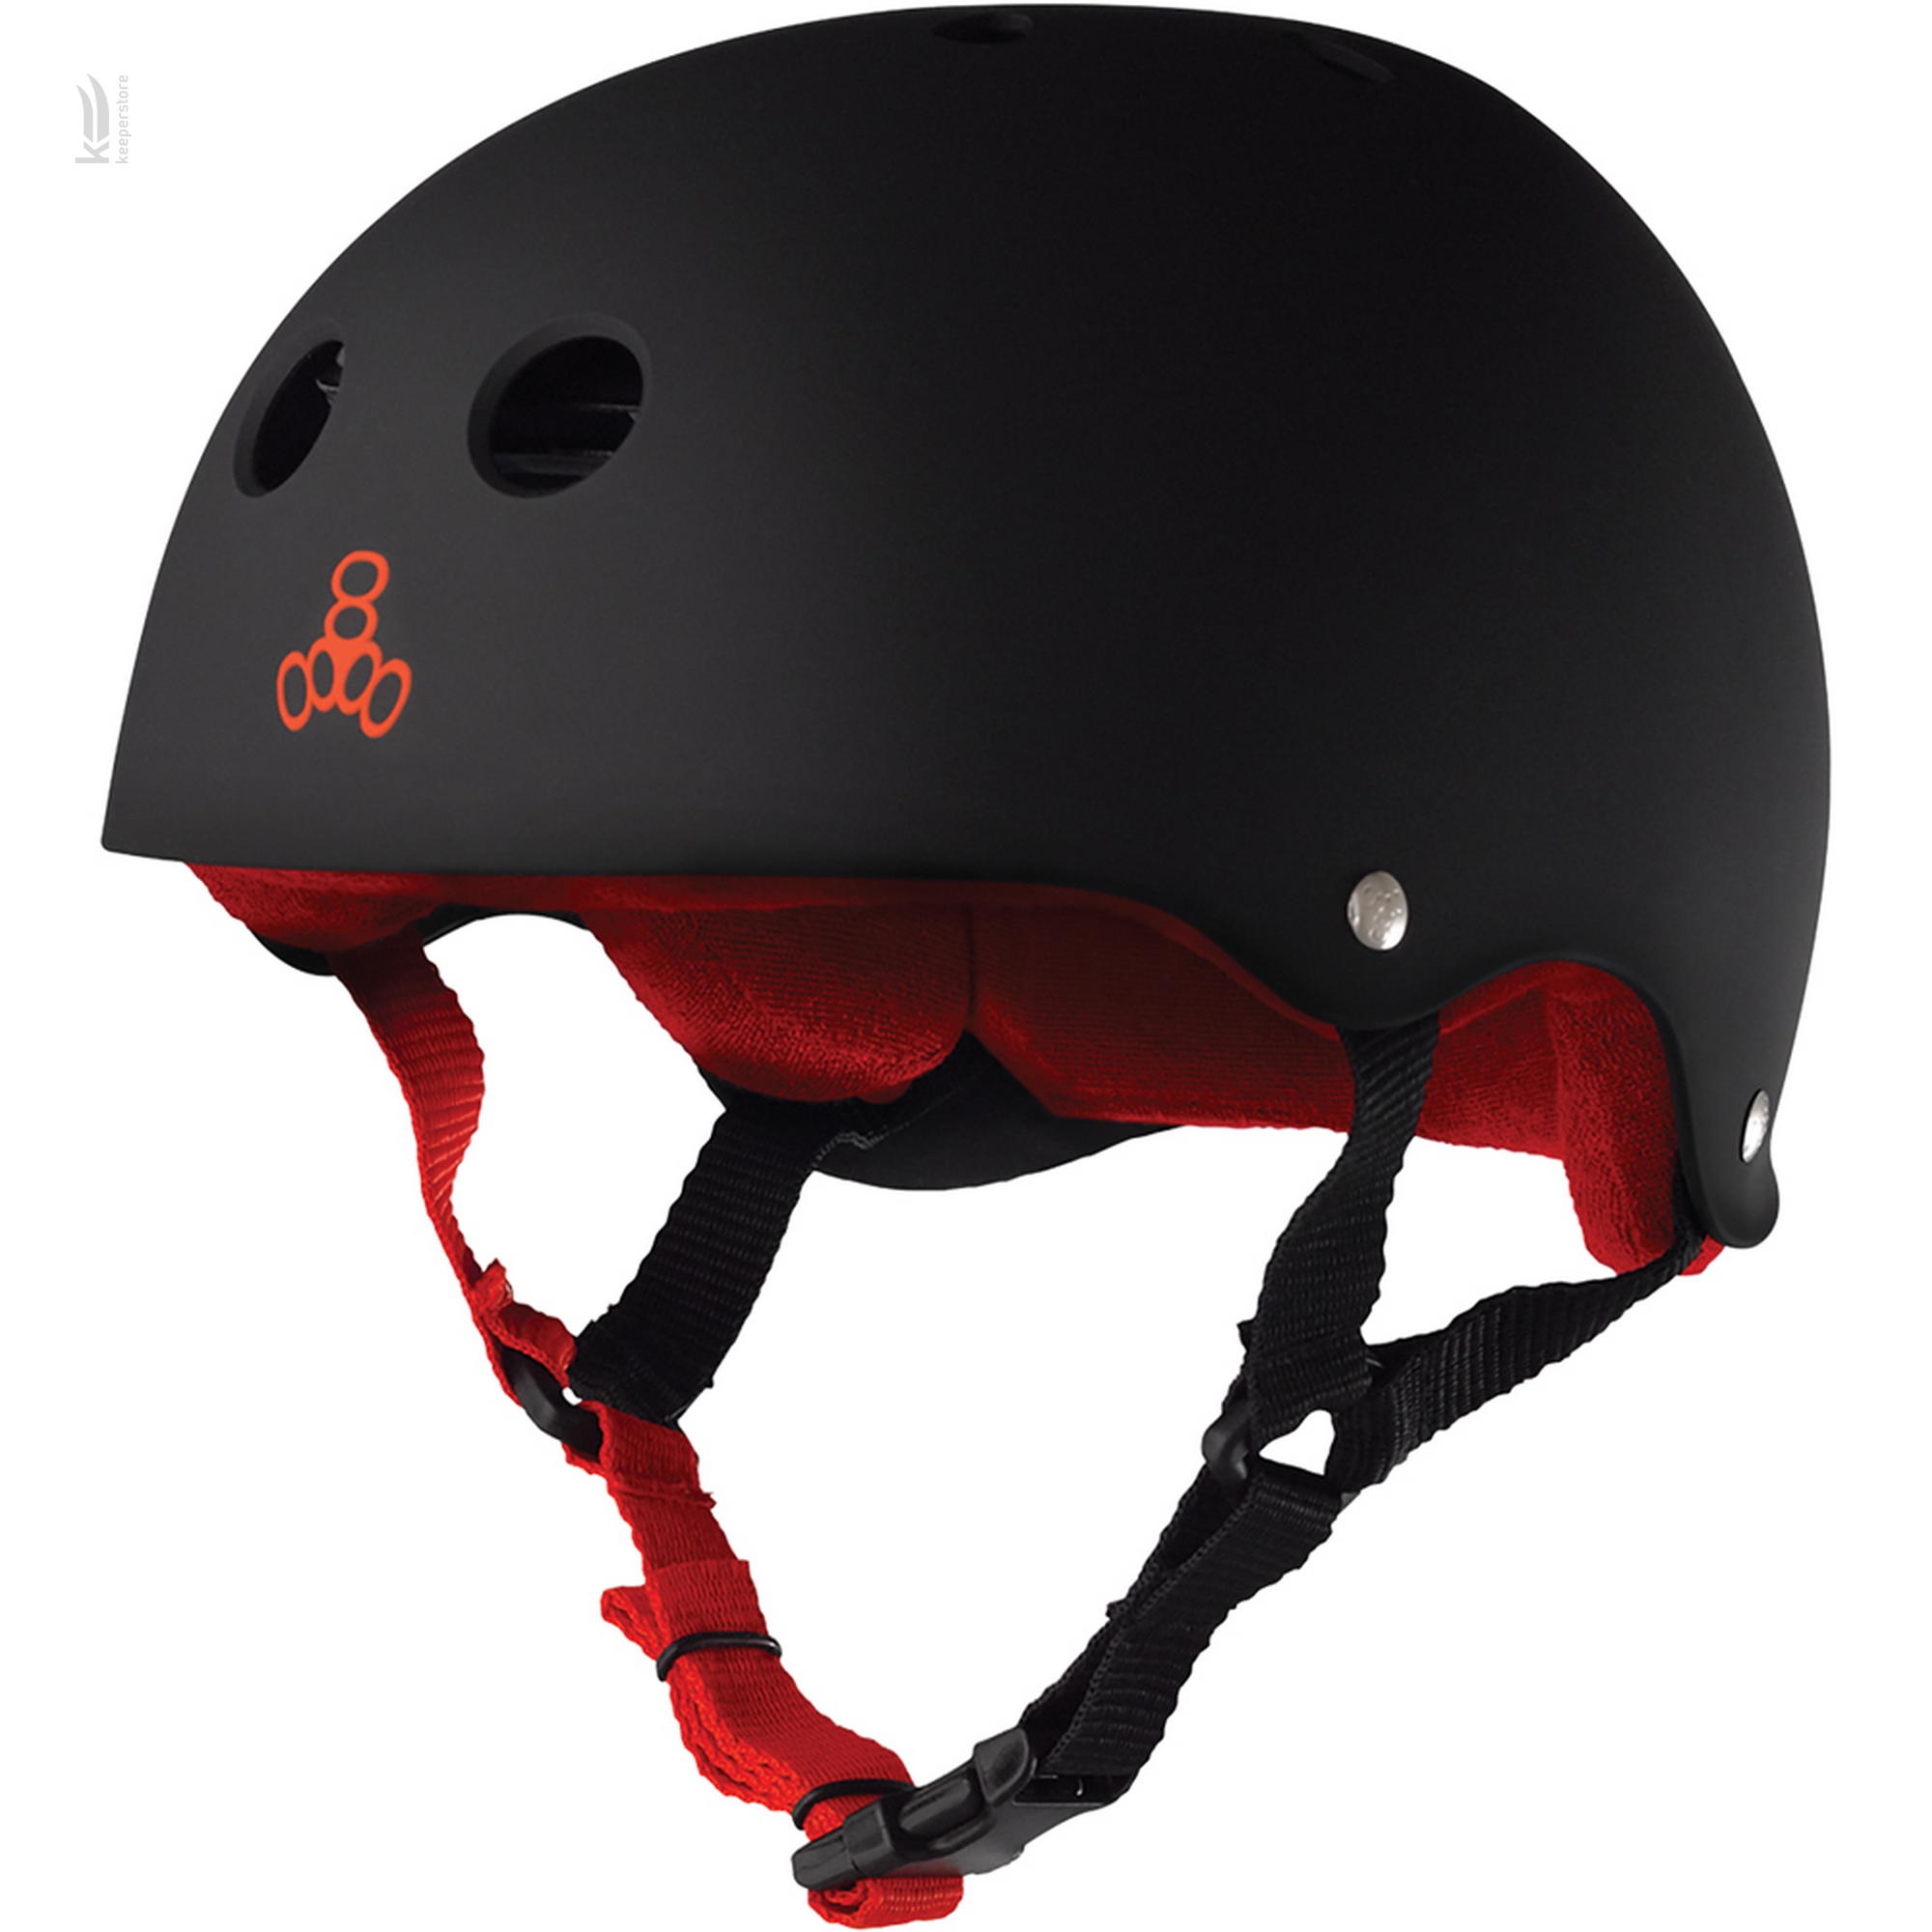 Шлем для скейтбординга Triple8 Sweatsaver Helmet Black w/ Red (S)